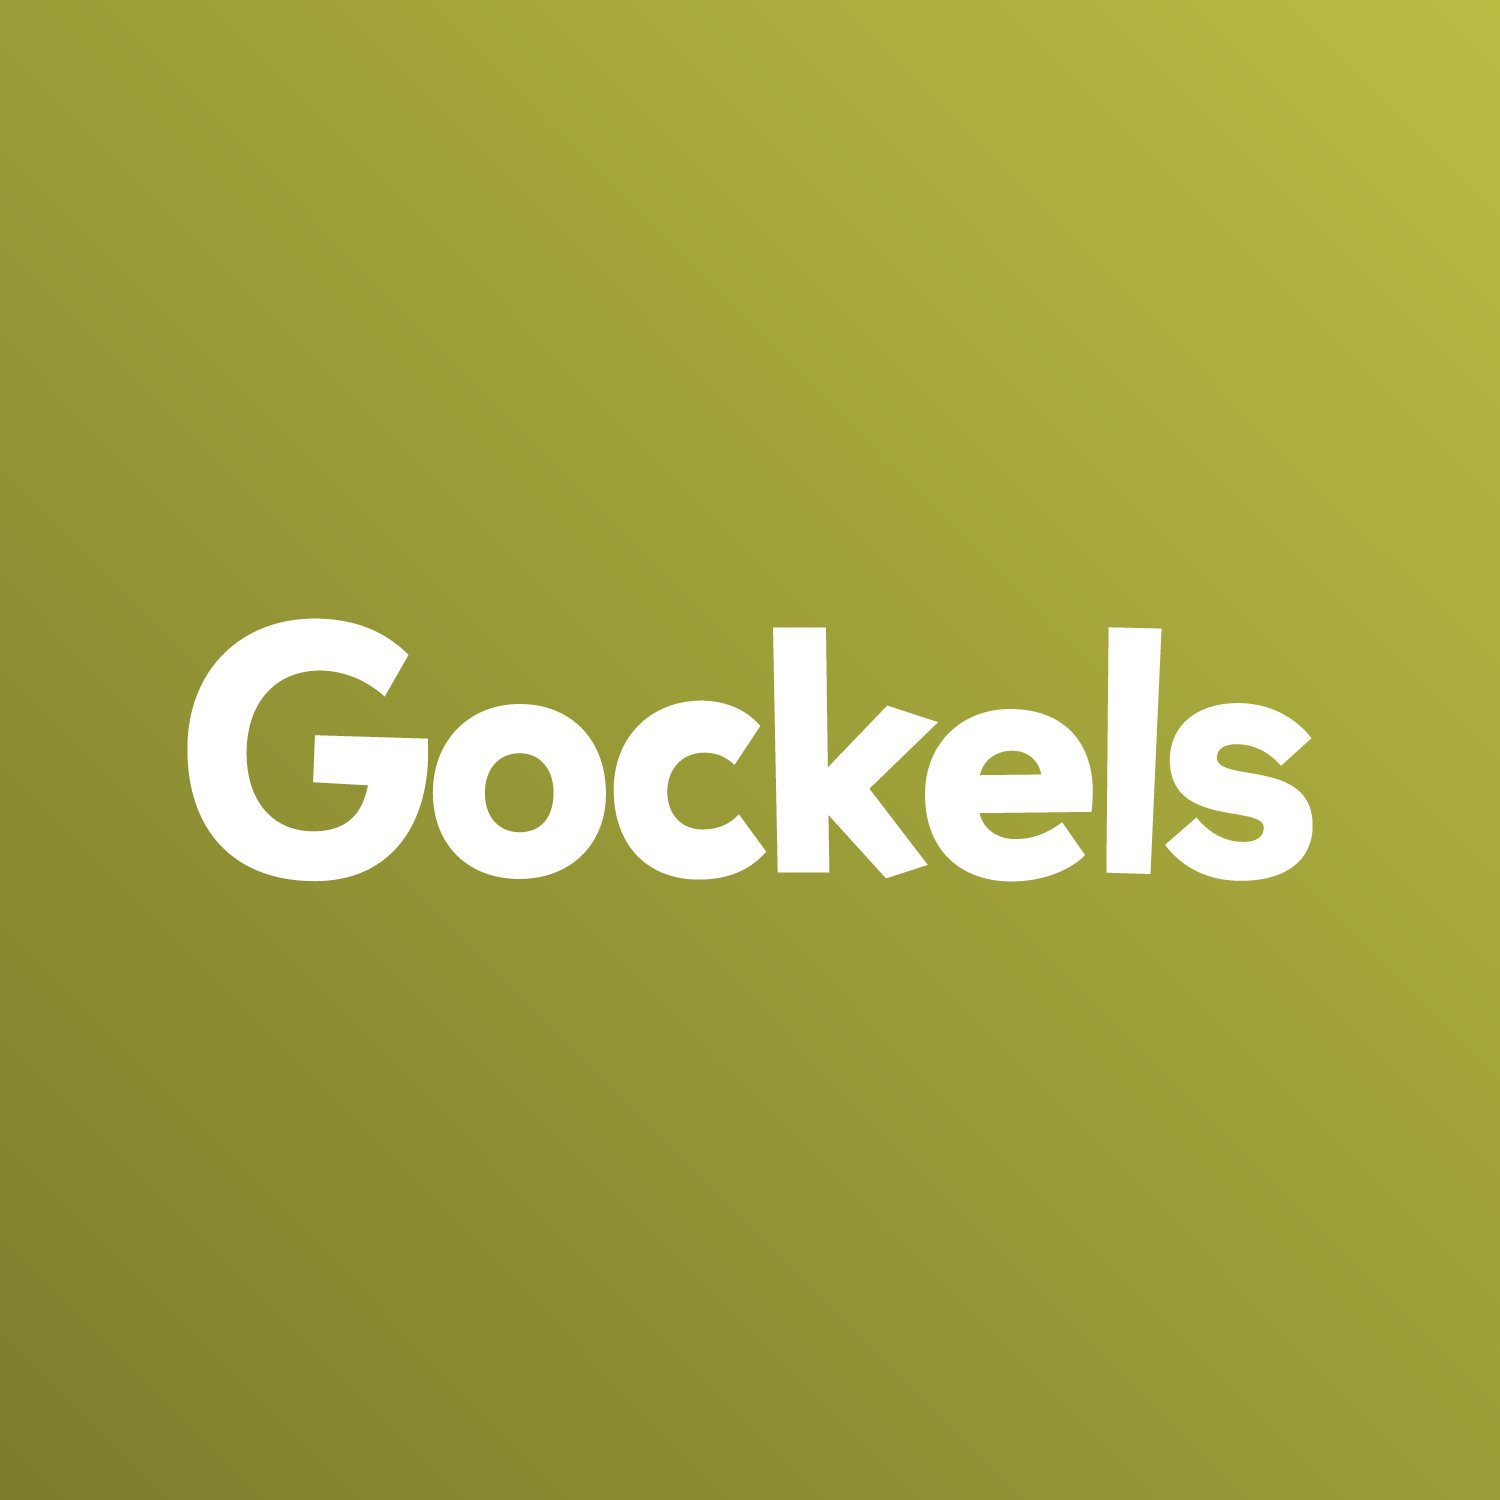 Gockels-Food